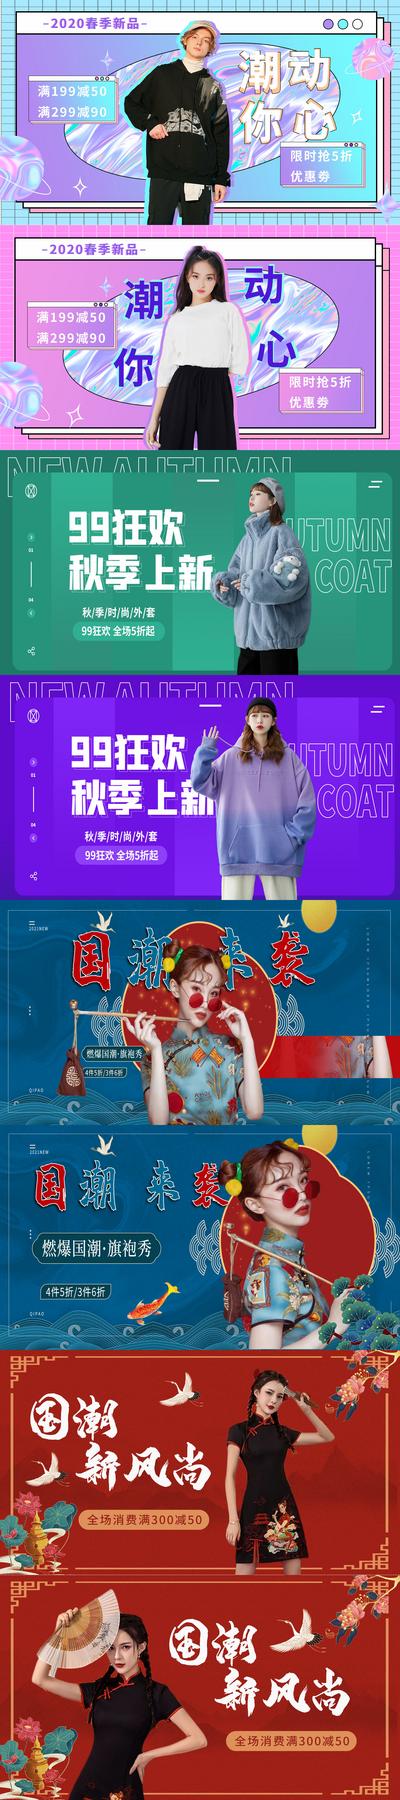 南门网 电商海报 淘宝海报 banner 服装 促销 宣传 国潮 炫彩